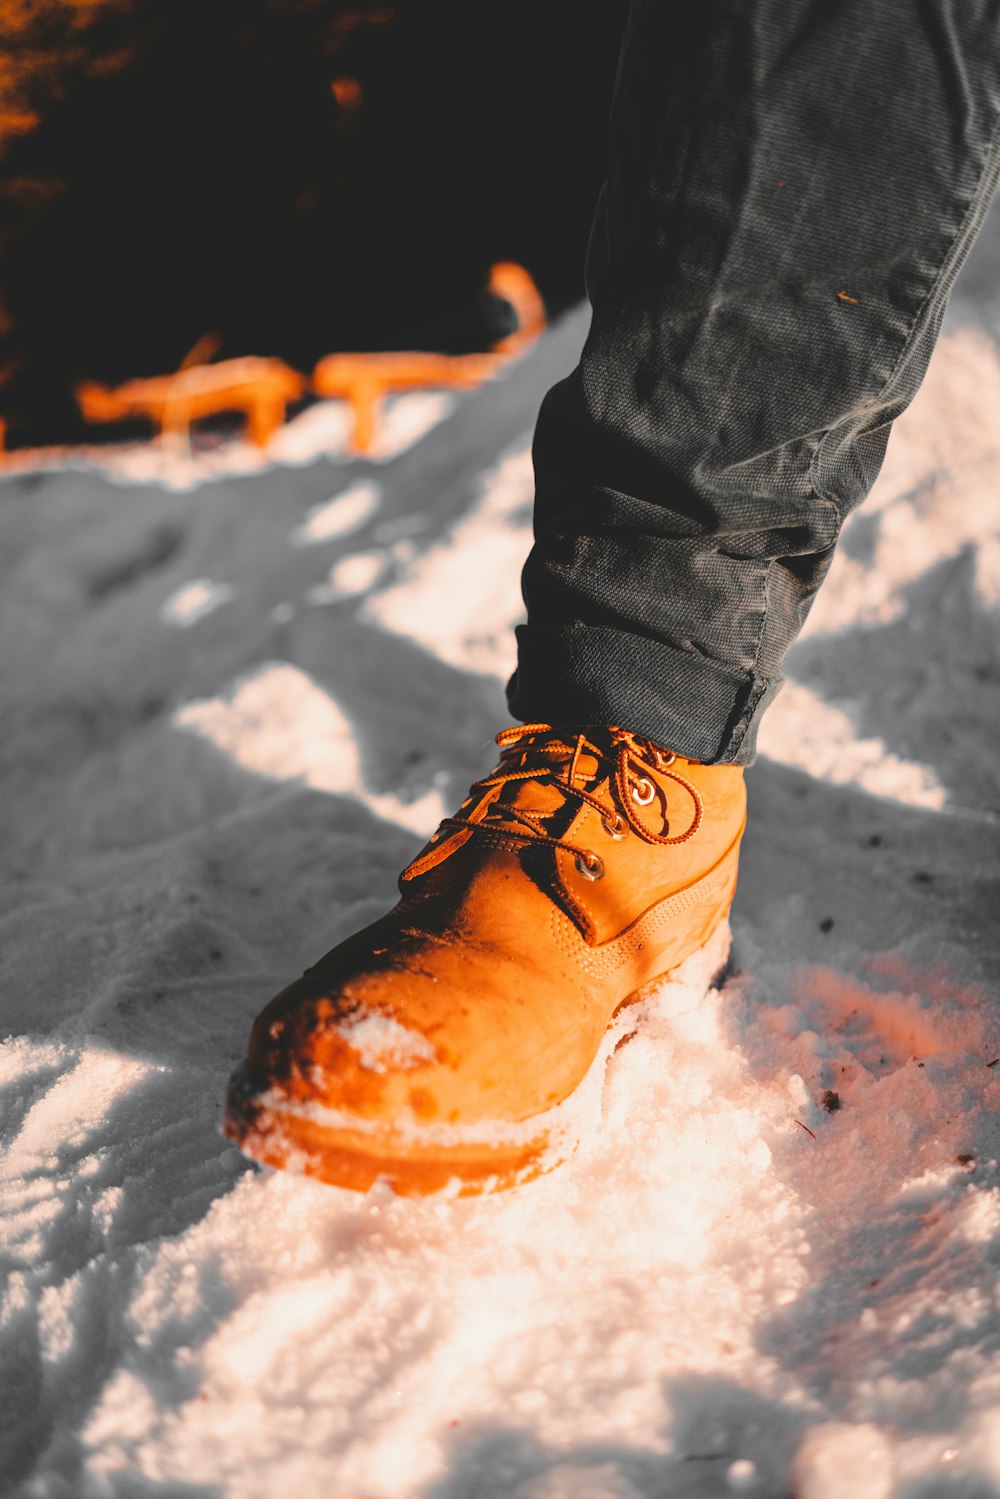 オレンジ色の靴を履いて雪の中に立っている人